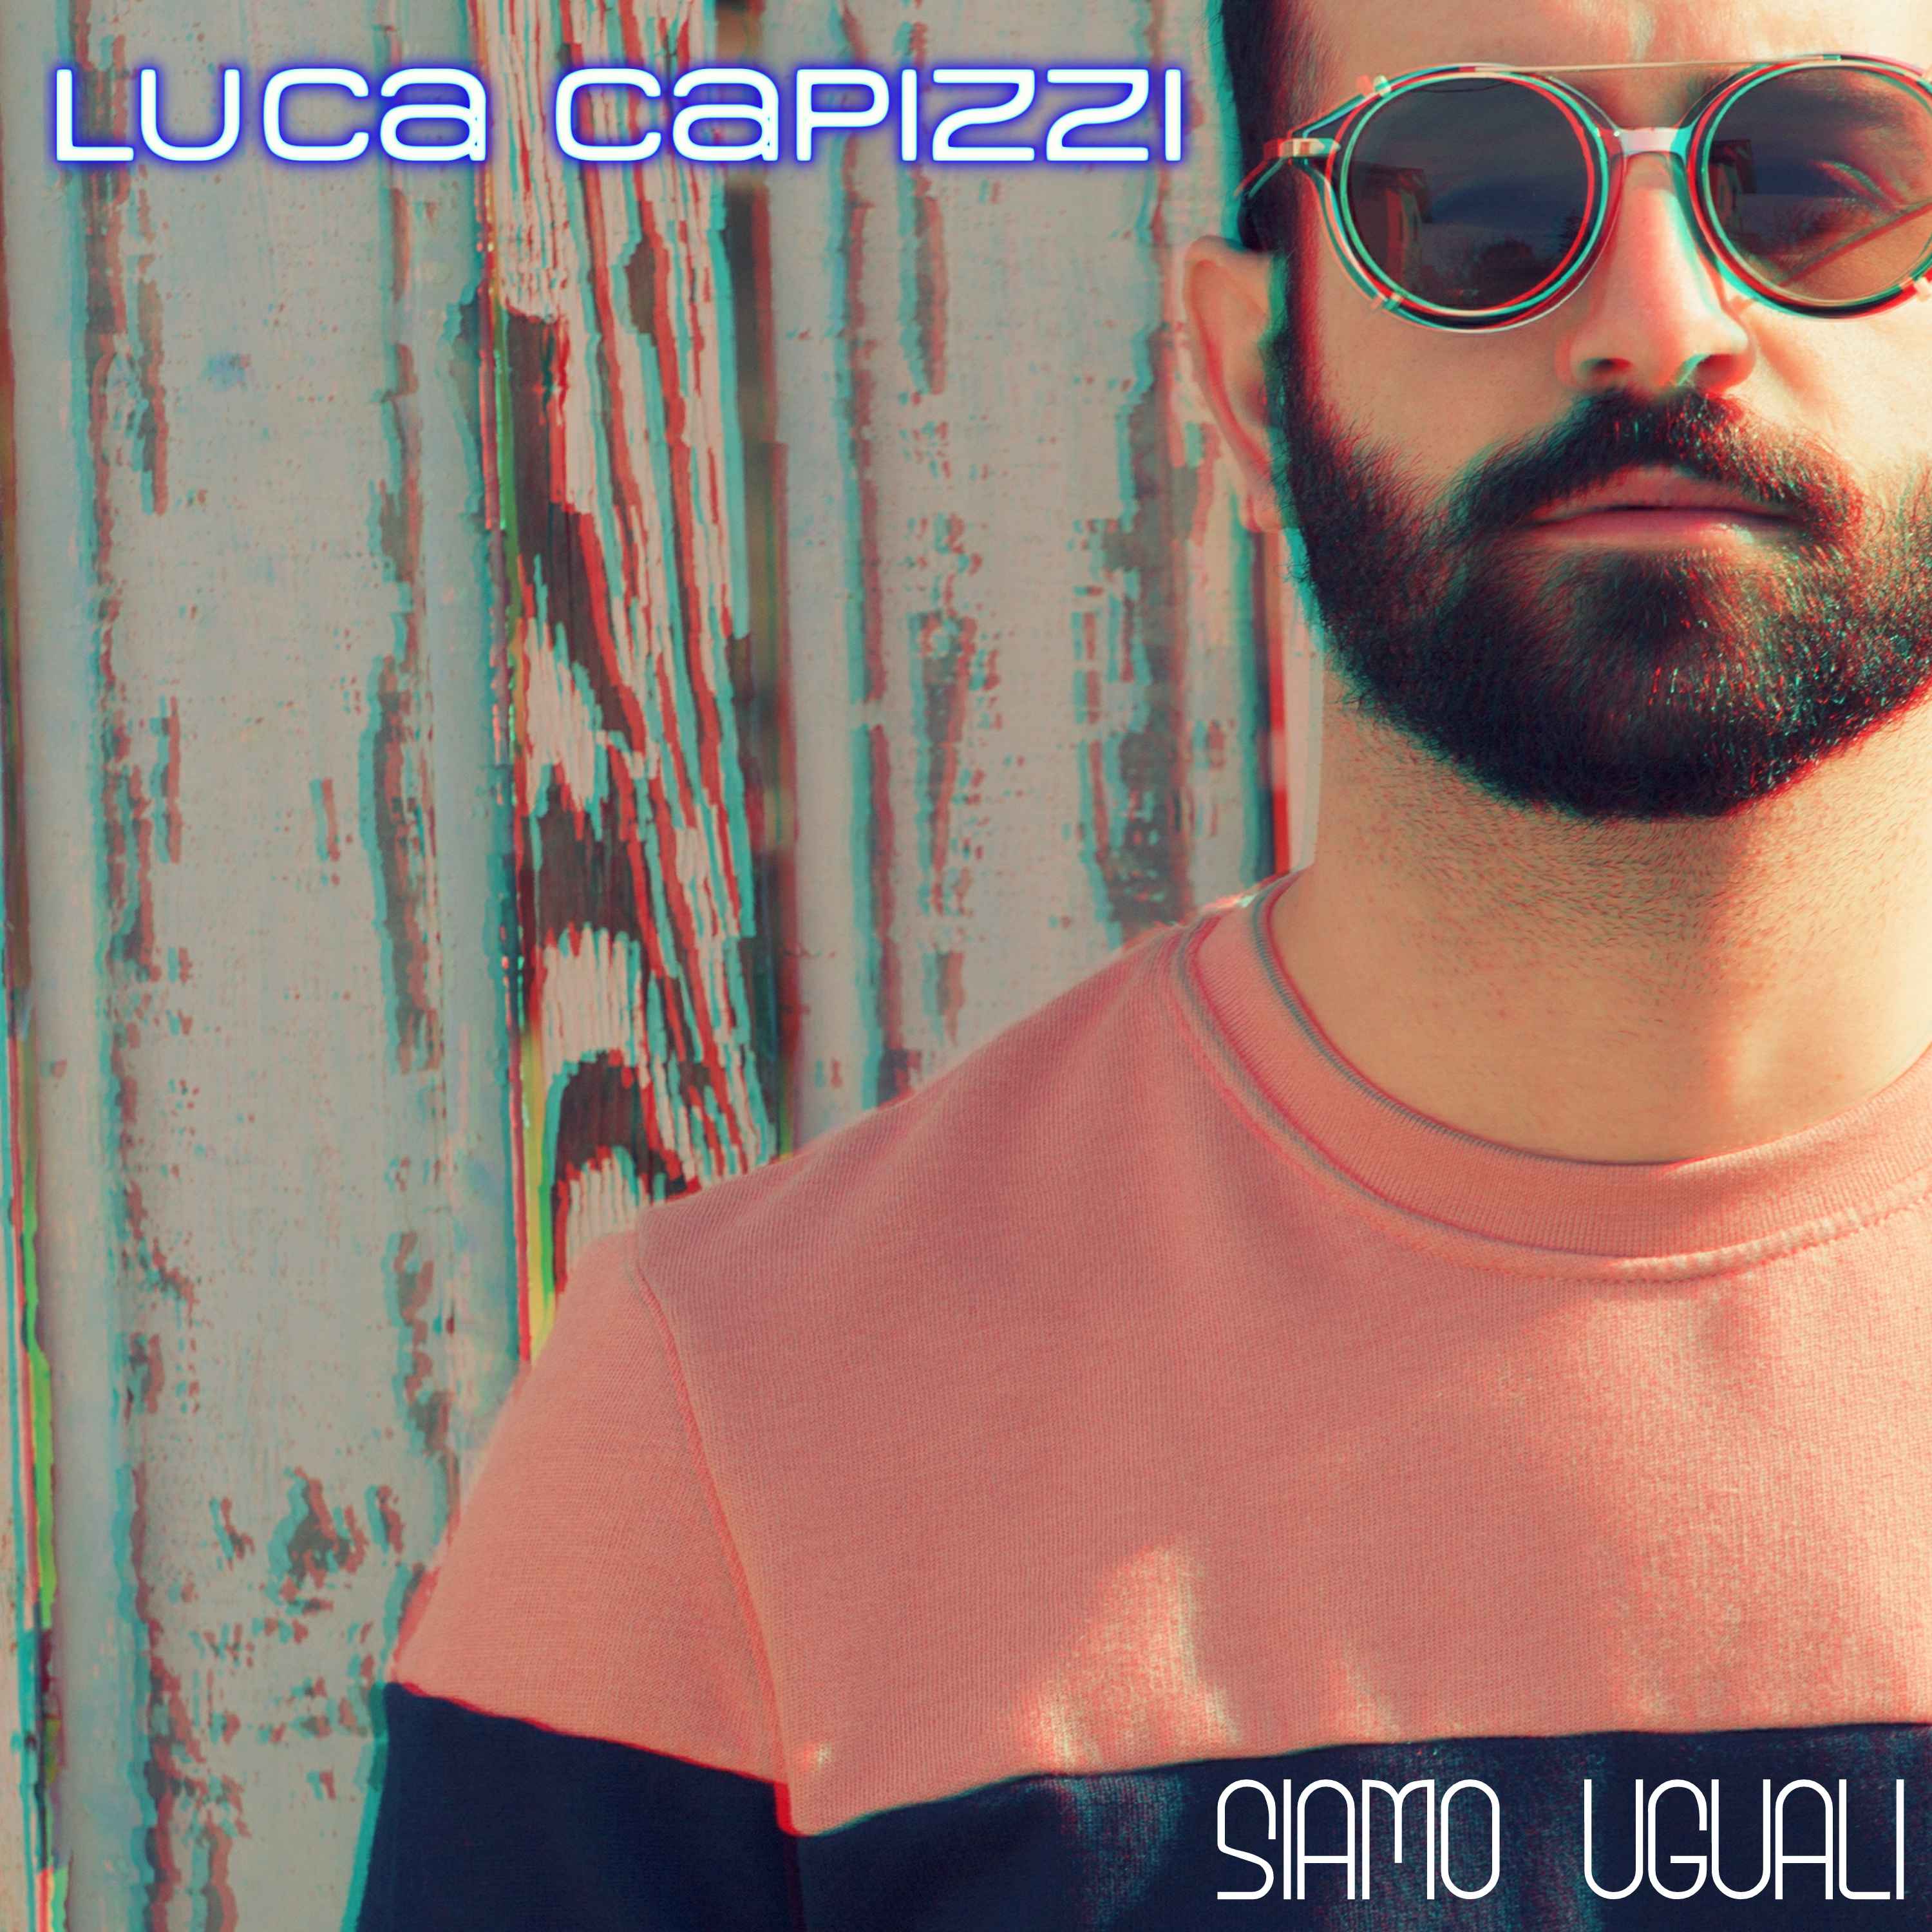 Foto 1 - Luca Capizzi  in radio dall’8 maggio con il nuovo singolo Siamo uguali